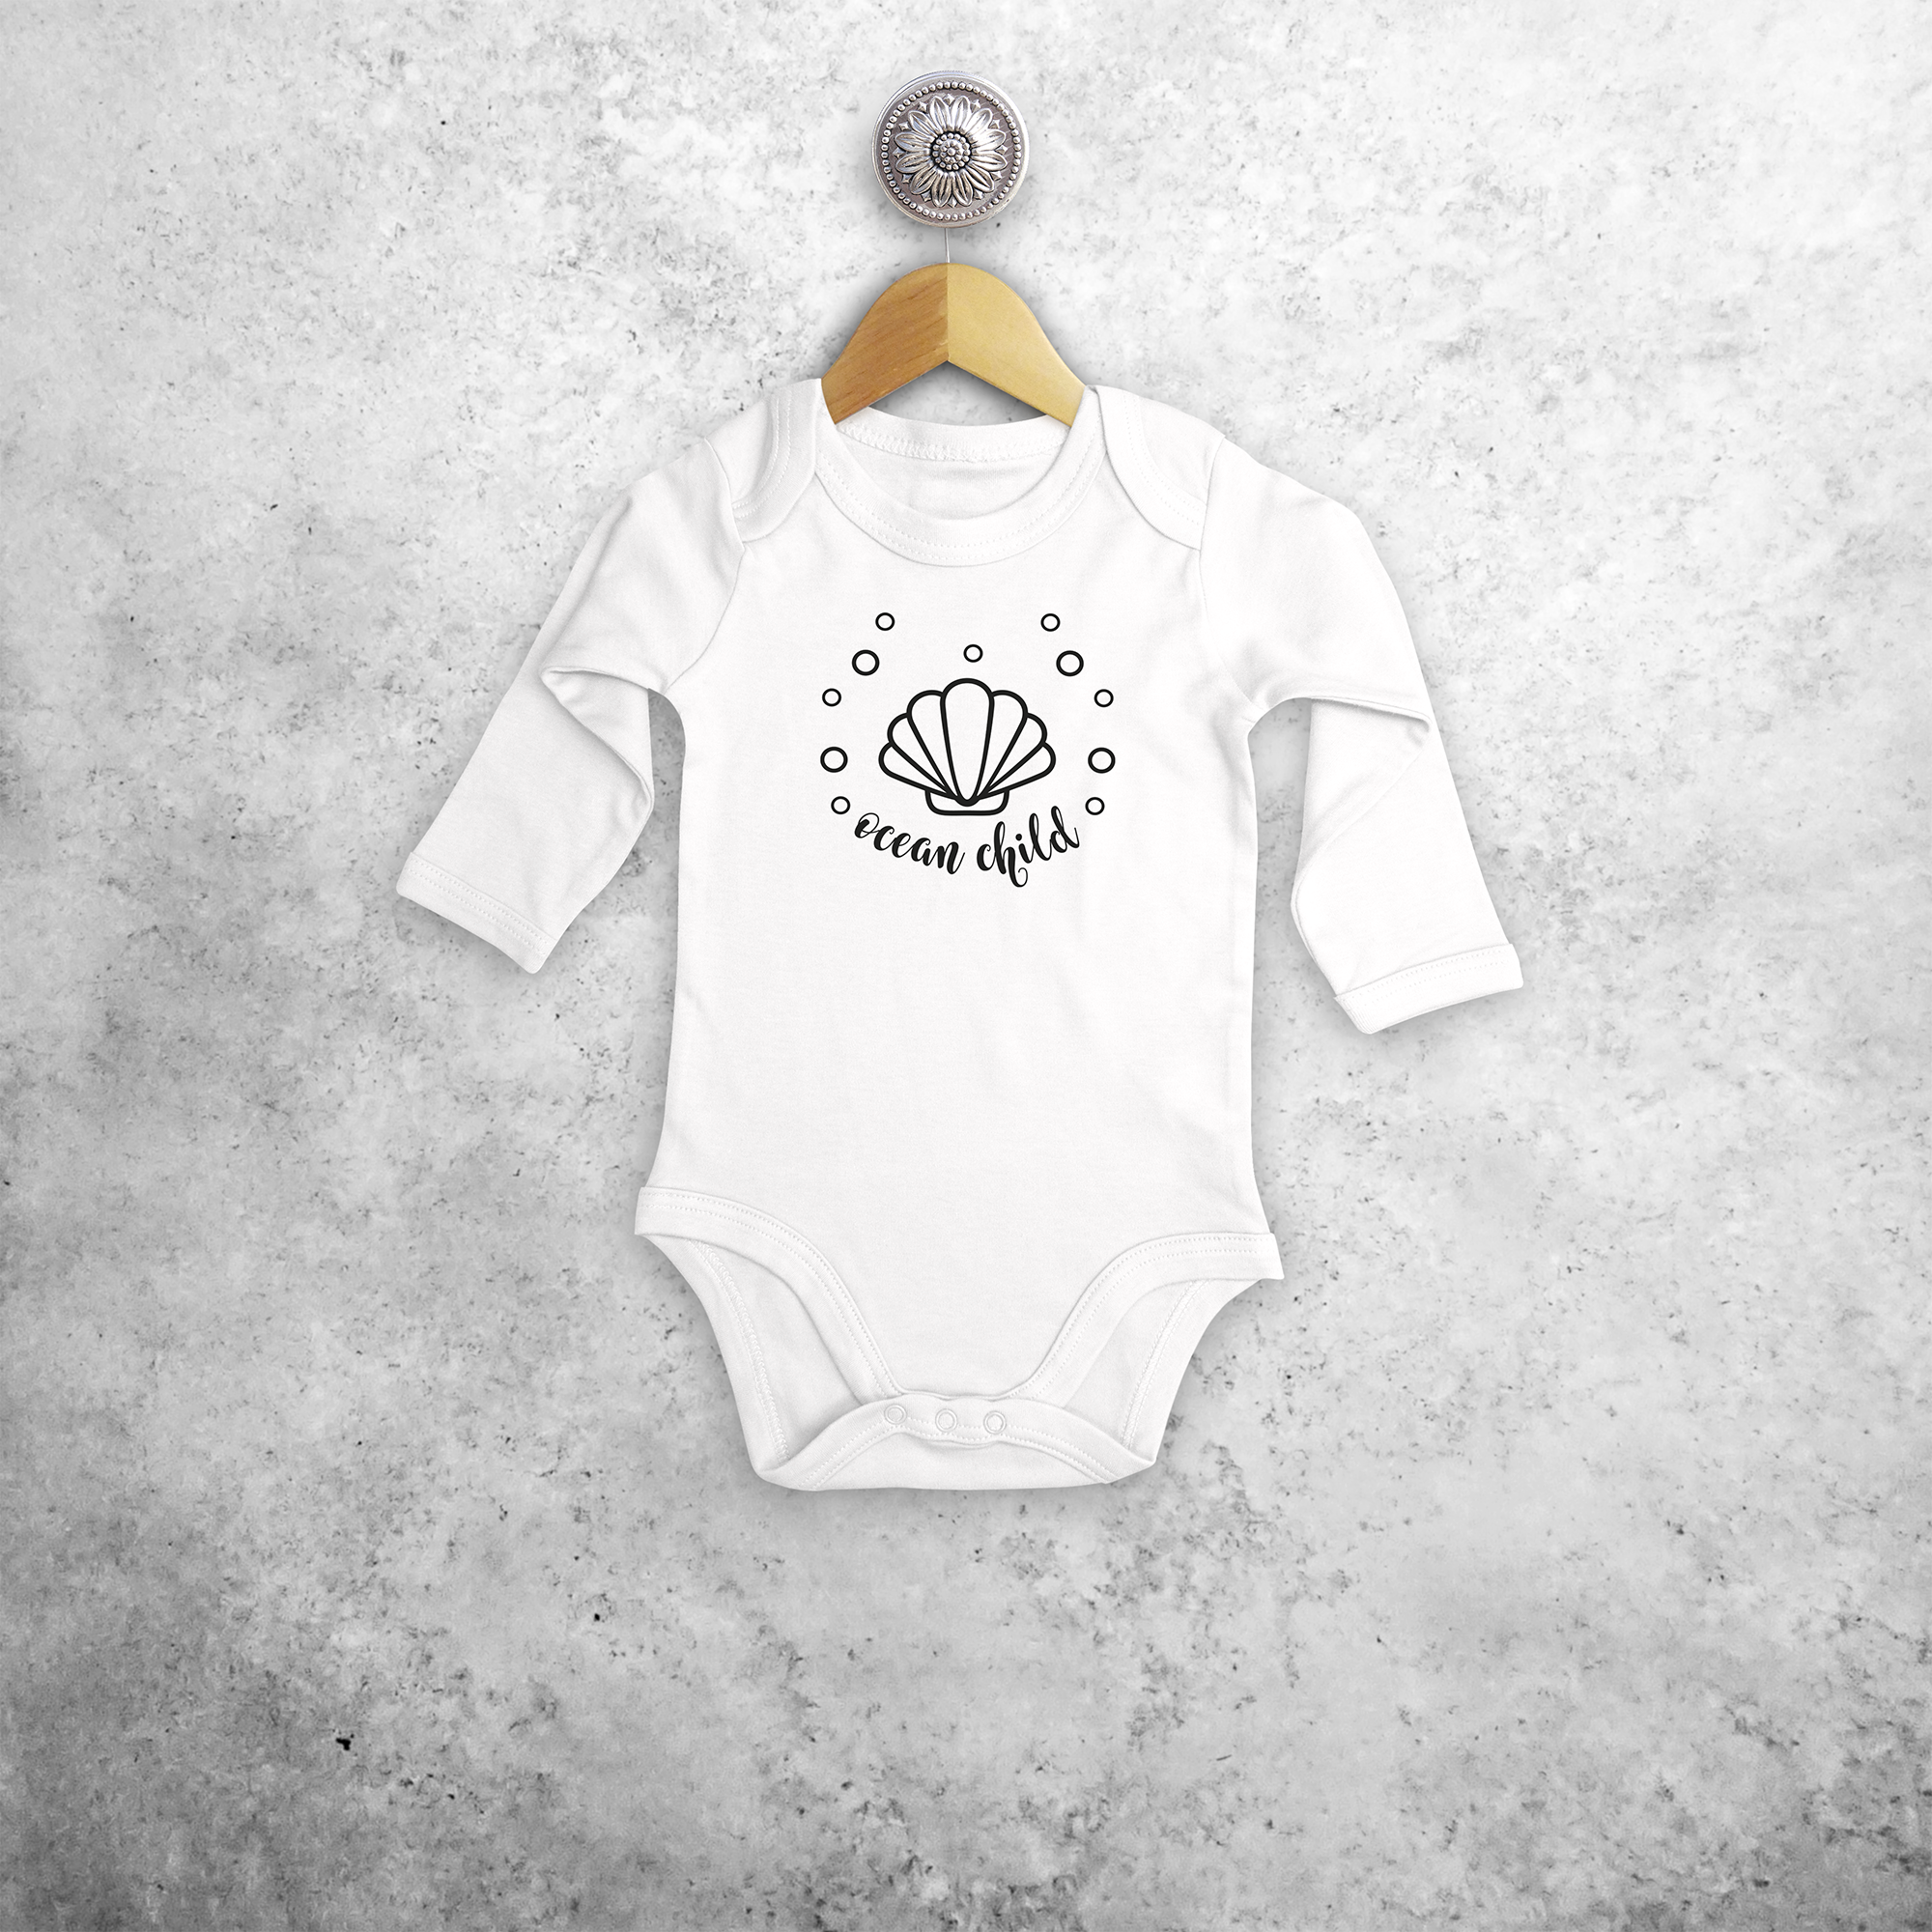 'Ocean child' baby longsleeve bodysuit